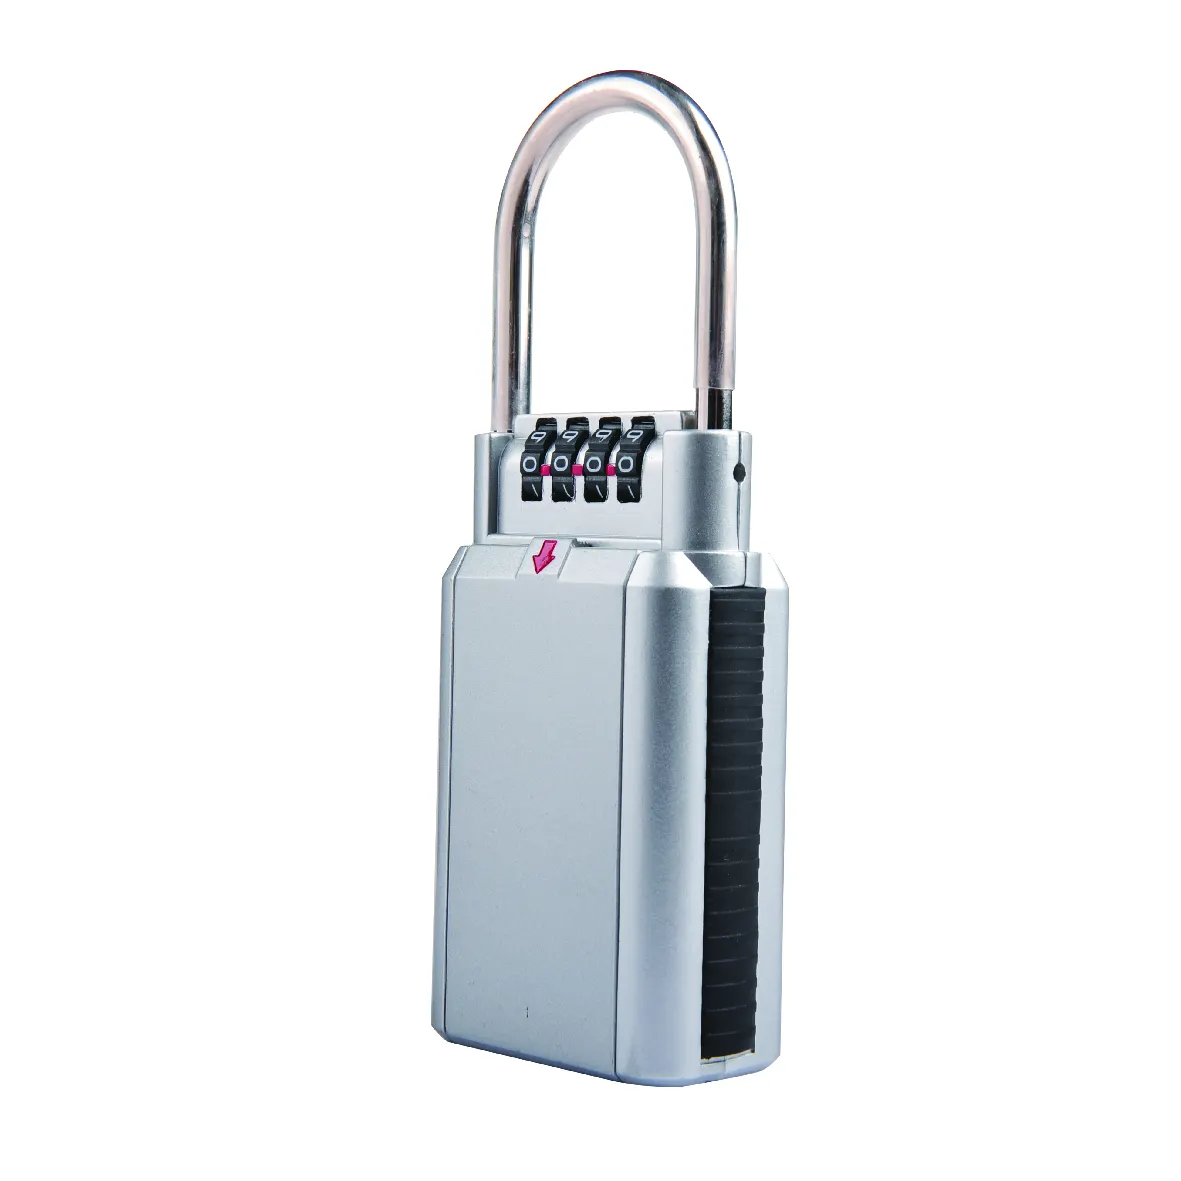 YH9171 Key-Guard kết hợp lưu trữ quan trọng lockbox key box đối với trang chủ cổng